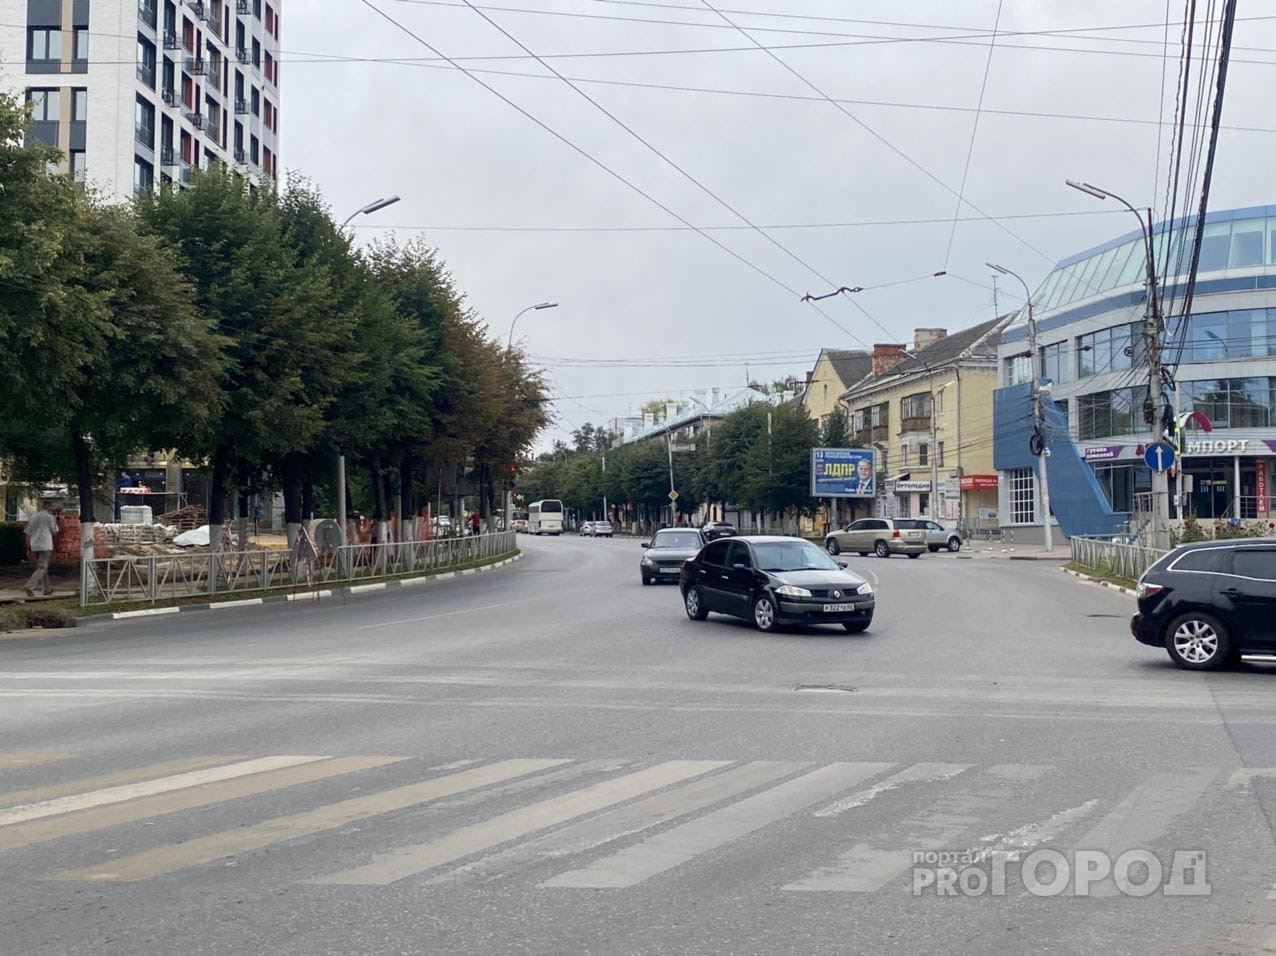 Проверка на зоркость: где найти светофор на улице Дзержинского?